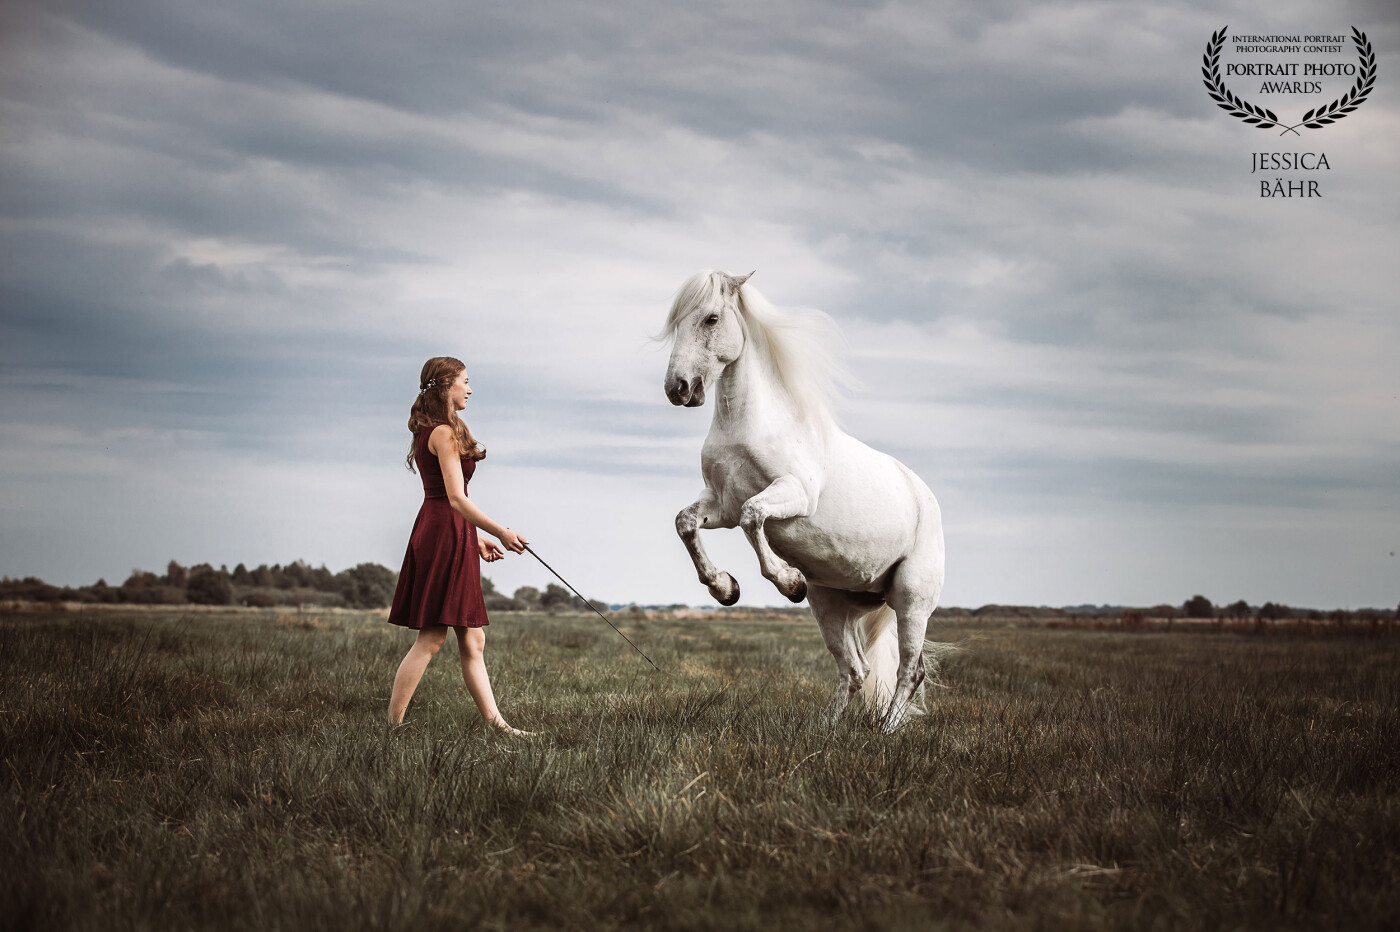 Eine junge Frau in einem Knielangen roten Kleid mit einem vor ihr steigendem weißen Pferd auf einer weiten Landschaft und bewölktem Himmel